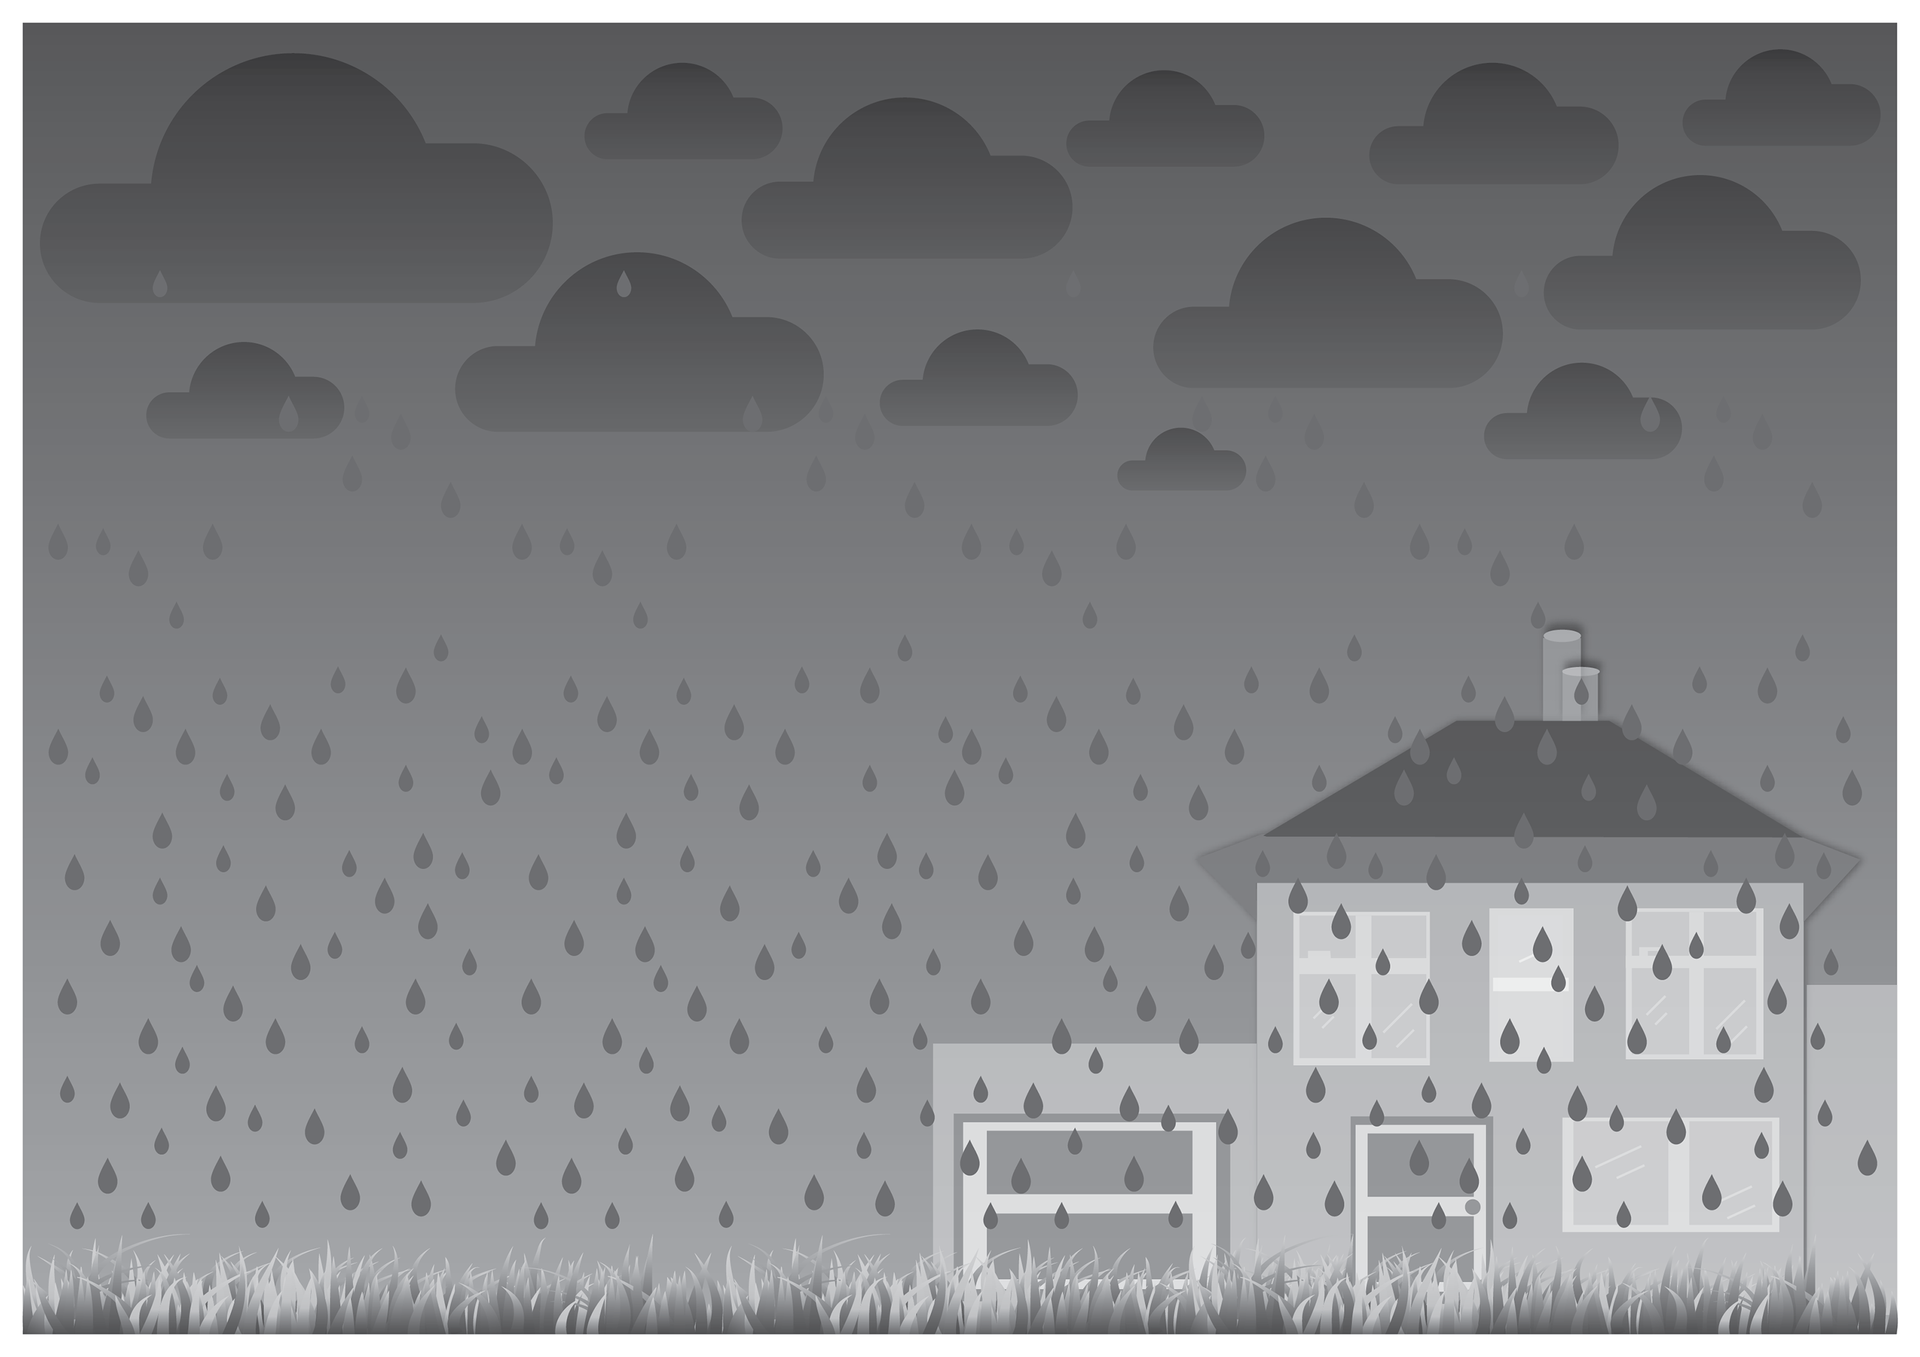 Szósta ilustracja w galerii. Przedstawia czarno biały symboliczny rysunek domu jednorodzinnego z garażem podczas deszczowej pogody. Niebo ciemne, zachmurzone. Padający gęsty deszcz zrasza trawnik widoczny na pierwszym planie.